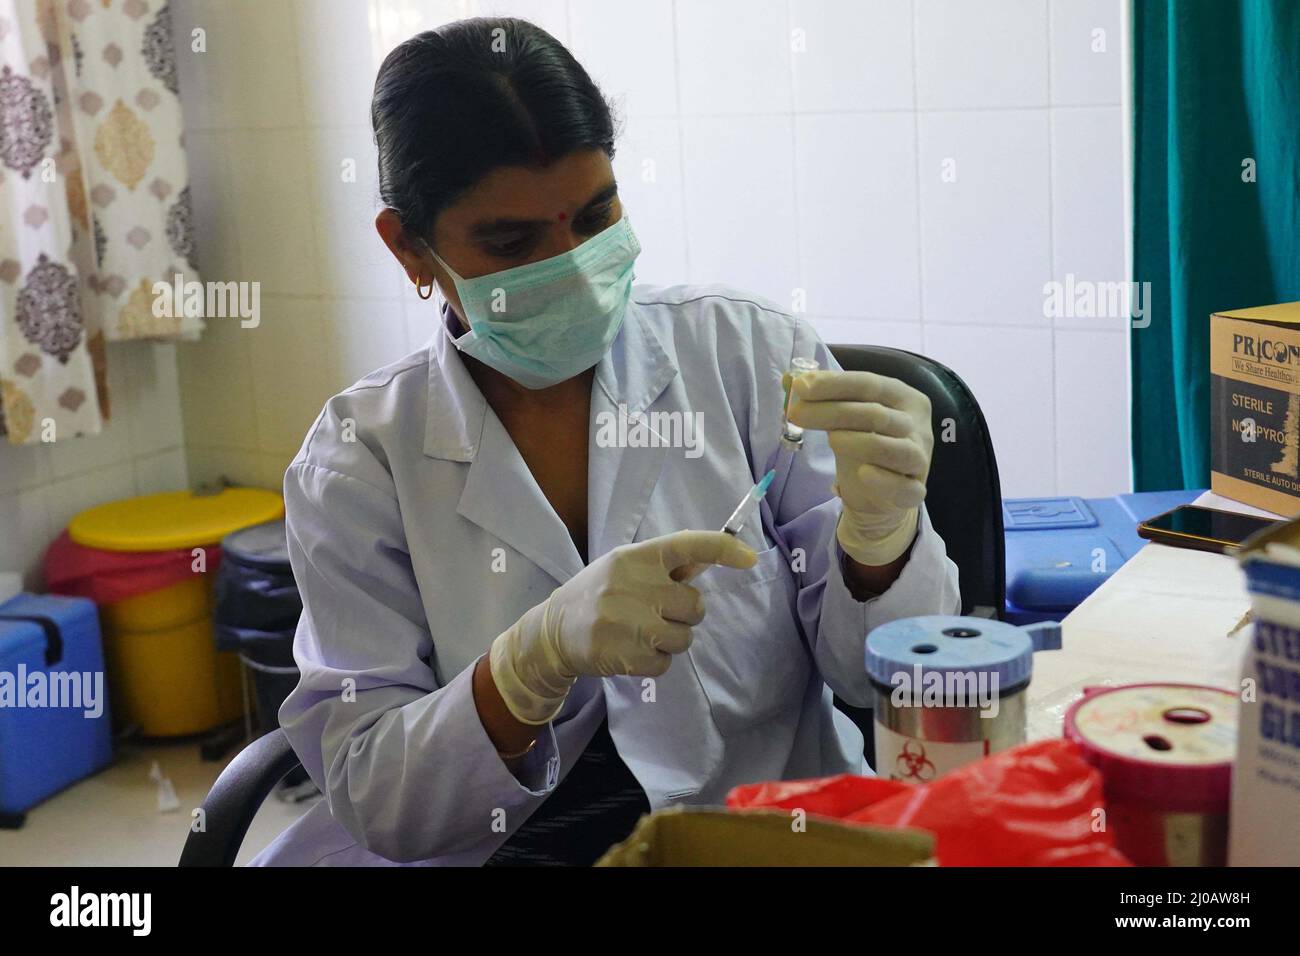 L'operatore sanitario indiano inocula le persone con una dose del vaccino del coronavirus Covisield Covid-19 in un centro di vaccinazione ad Ajmer, Rajasthan, India, il 08 maggio 2021. Foto Stock